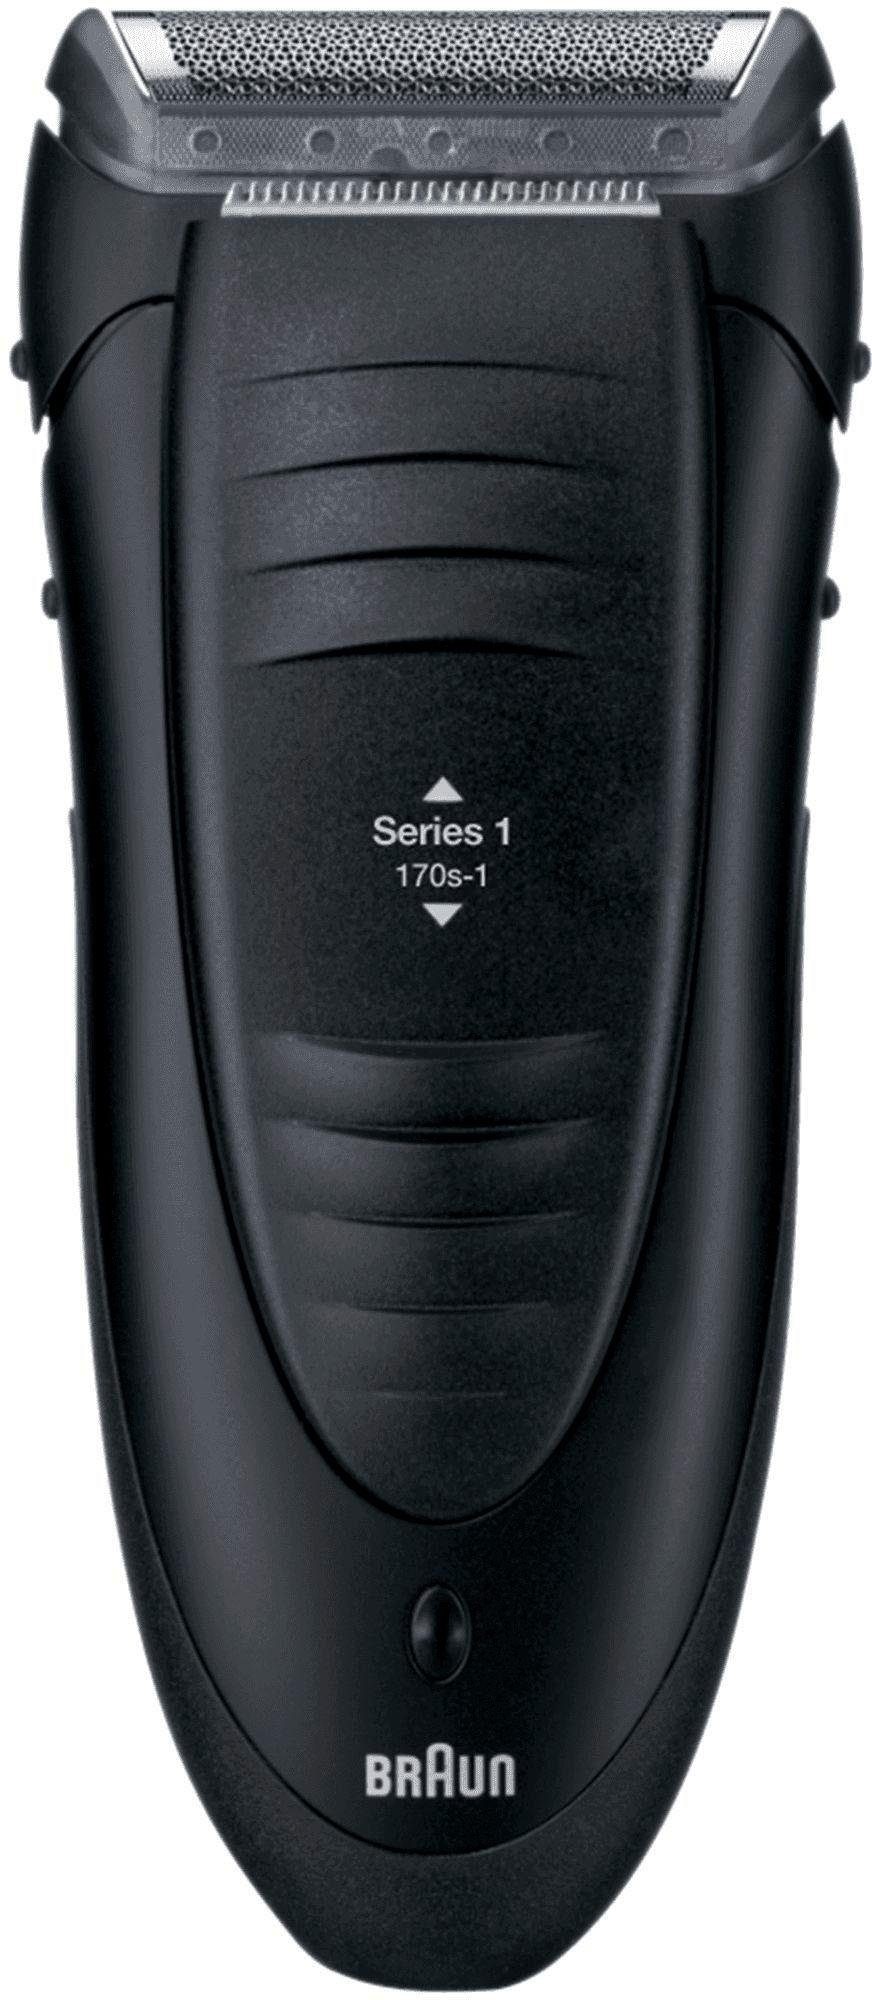 Braun Elektrorasierer »Series 1 170s-1«, Netzbetrieb jetzt kaufen bei OTTO